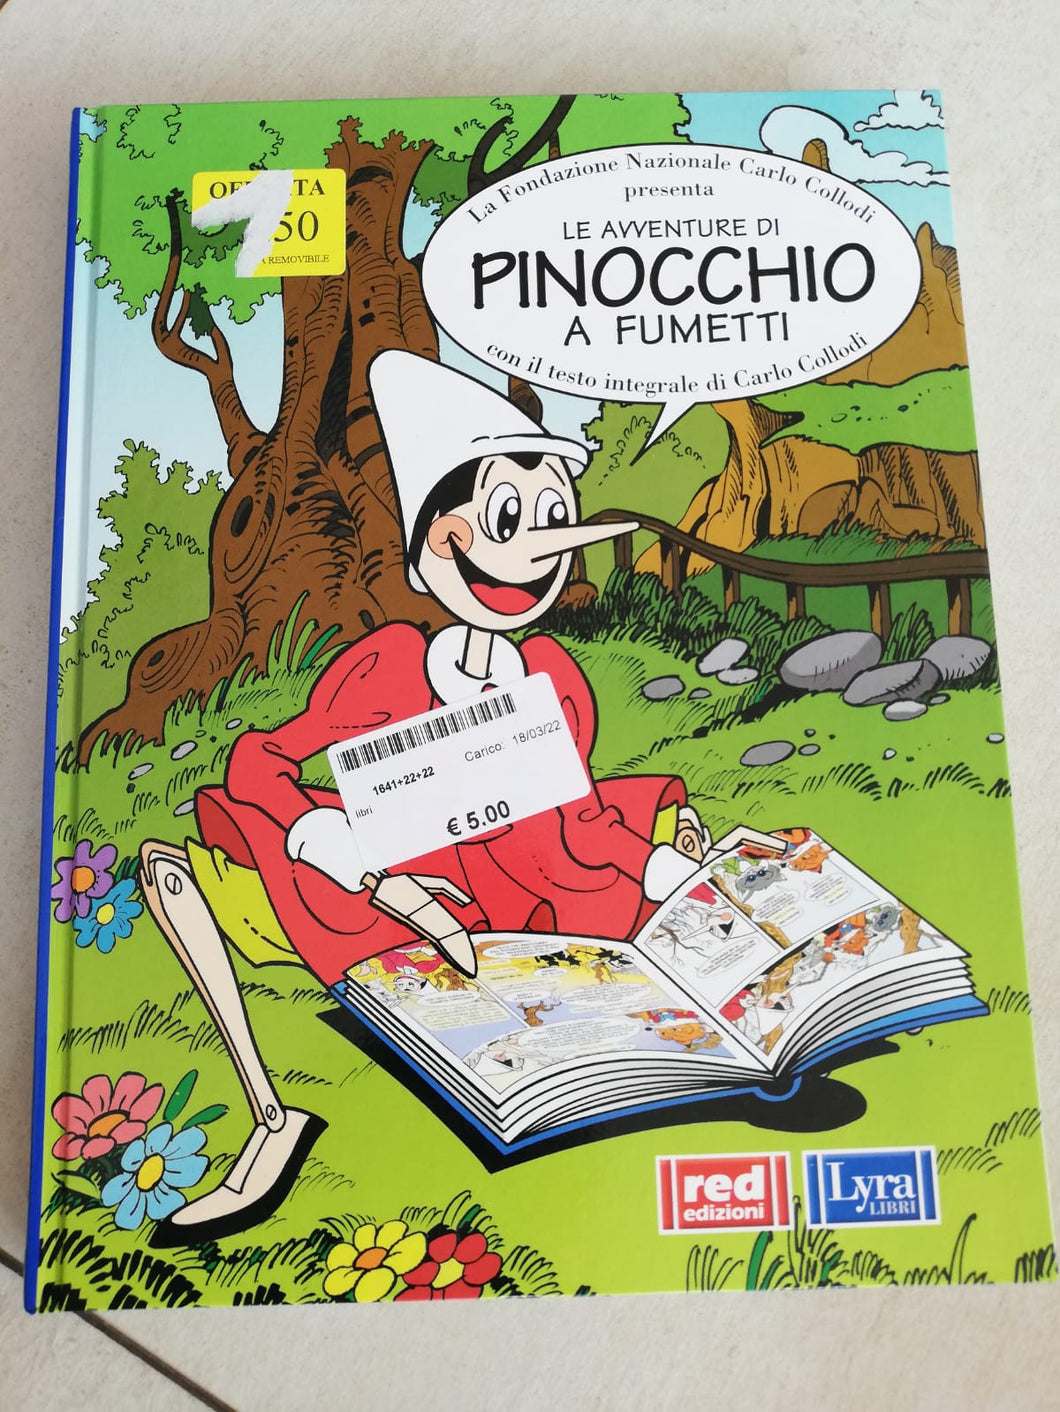 Libro Le Avventure di Pinocchio a Fumetti – Di Manina in Manina